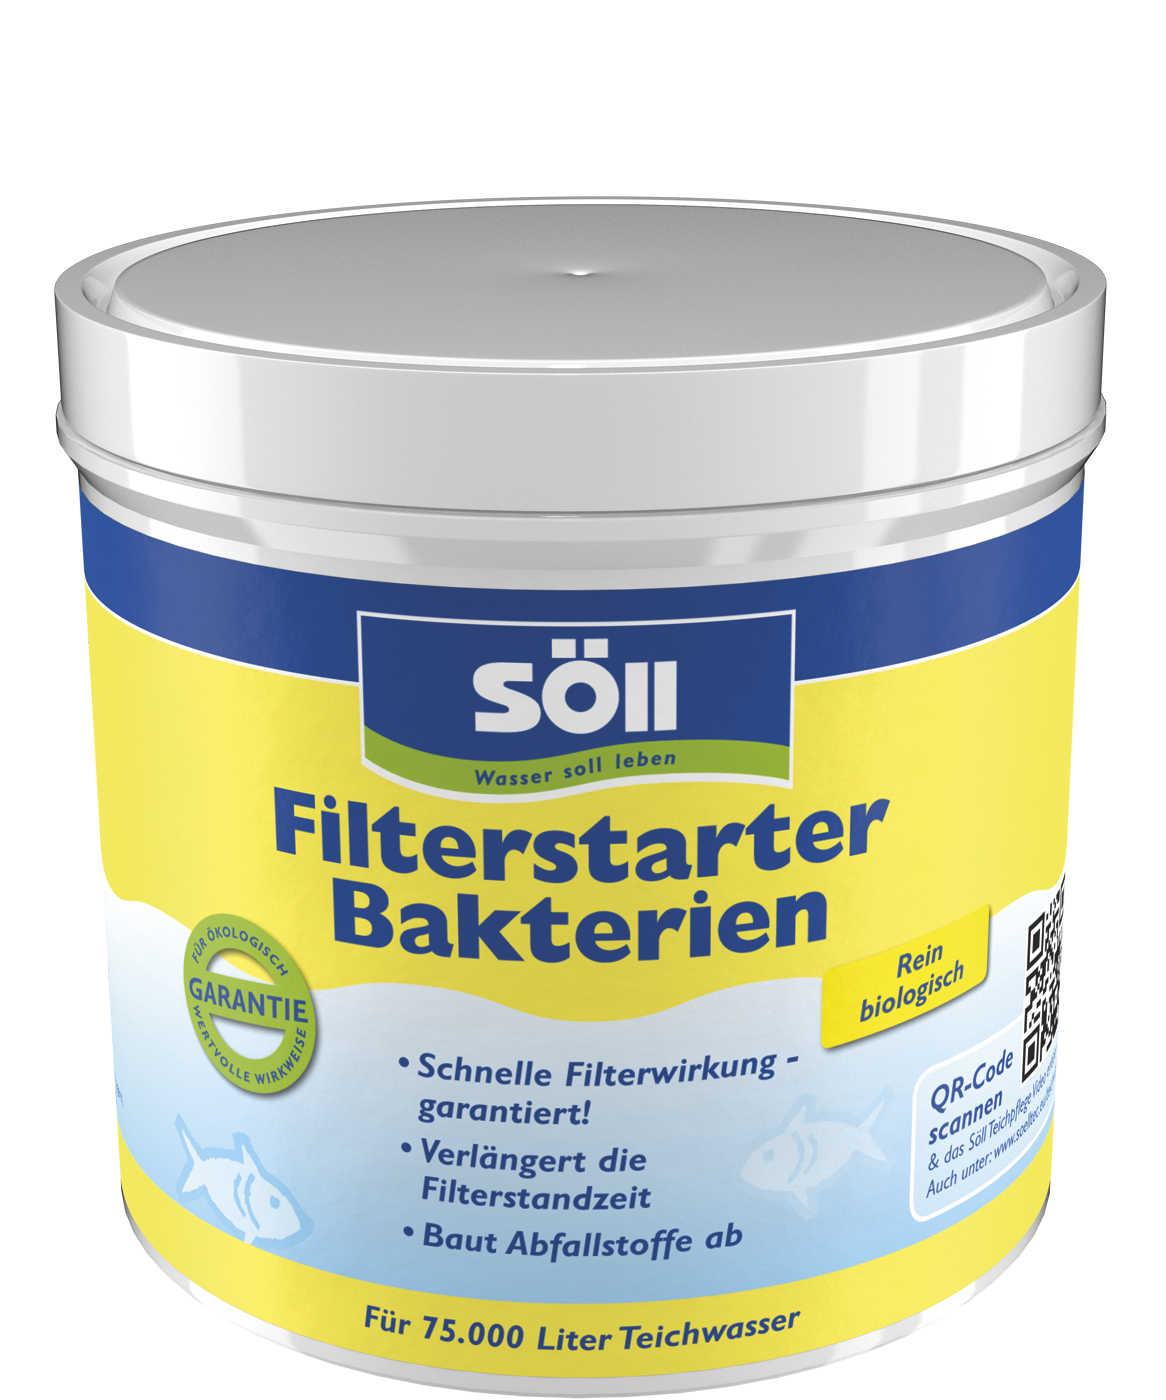 Söll GmbH FilterstarterBakterien